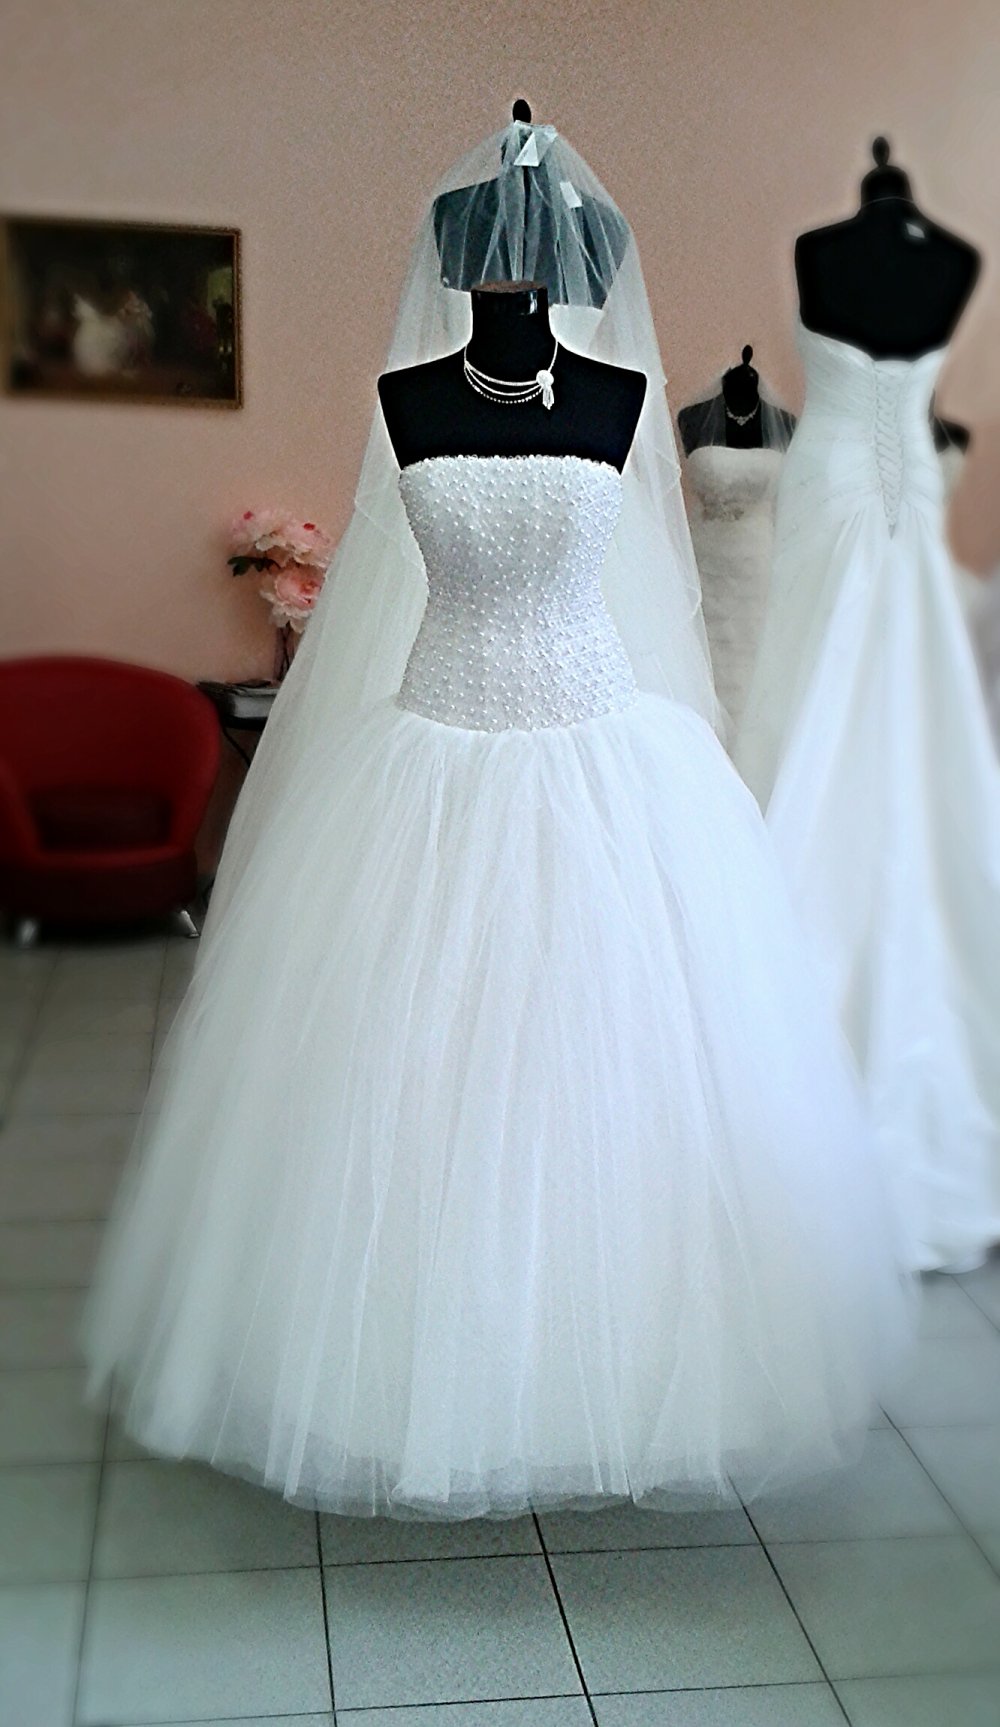 Свадебное платье "Адель", цвет светлый айвори, размер 44. Корсет расшит круглыми кристаллами и жемчугом.